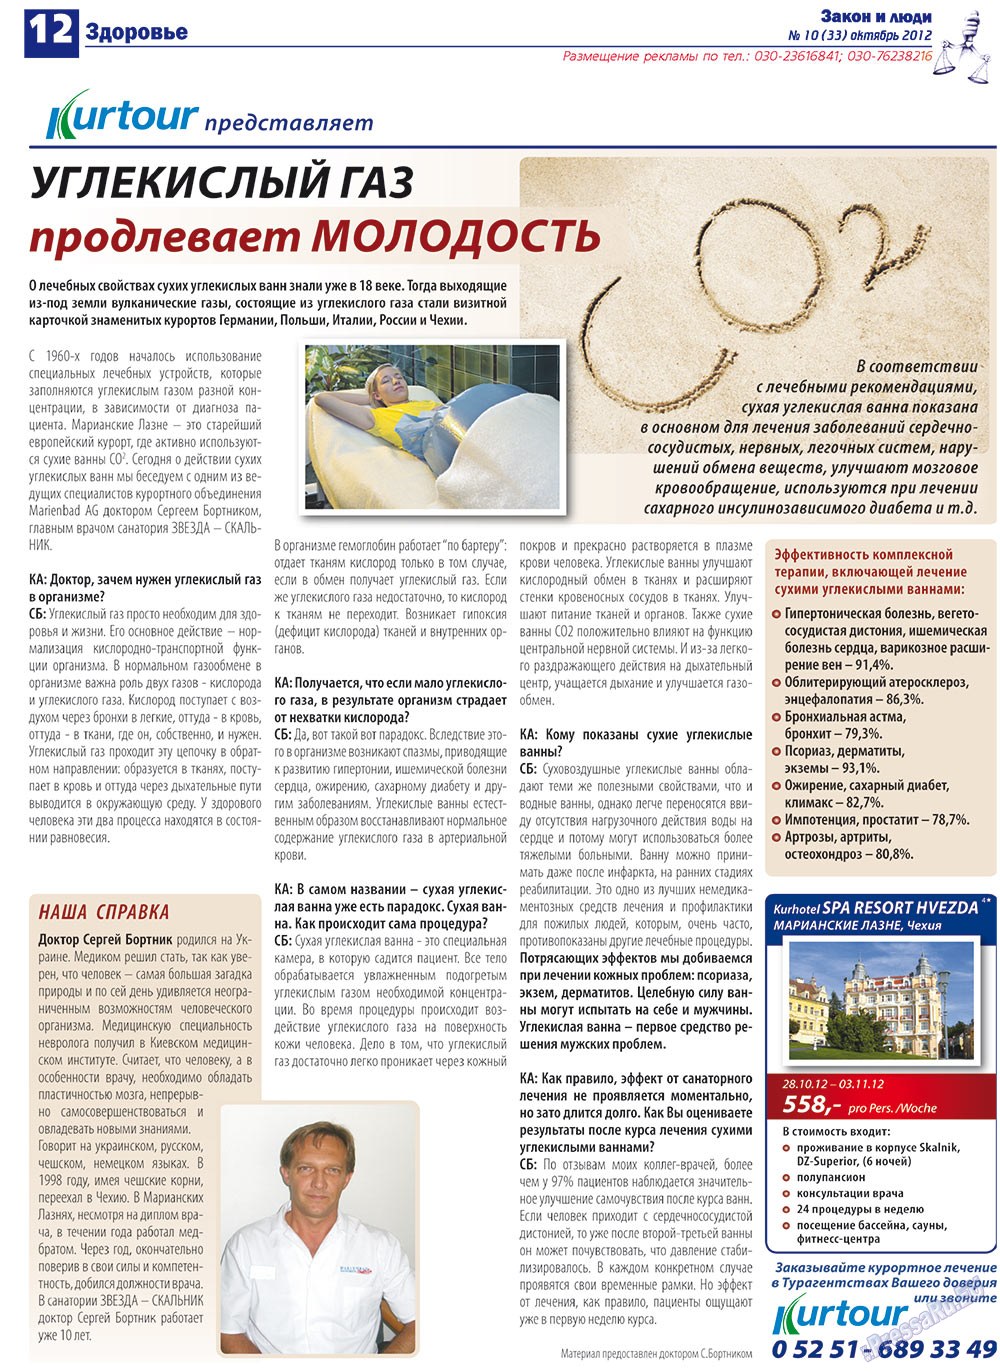 Закон и люди, газета. 2012 №10 стр.12